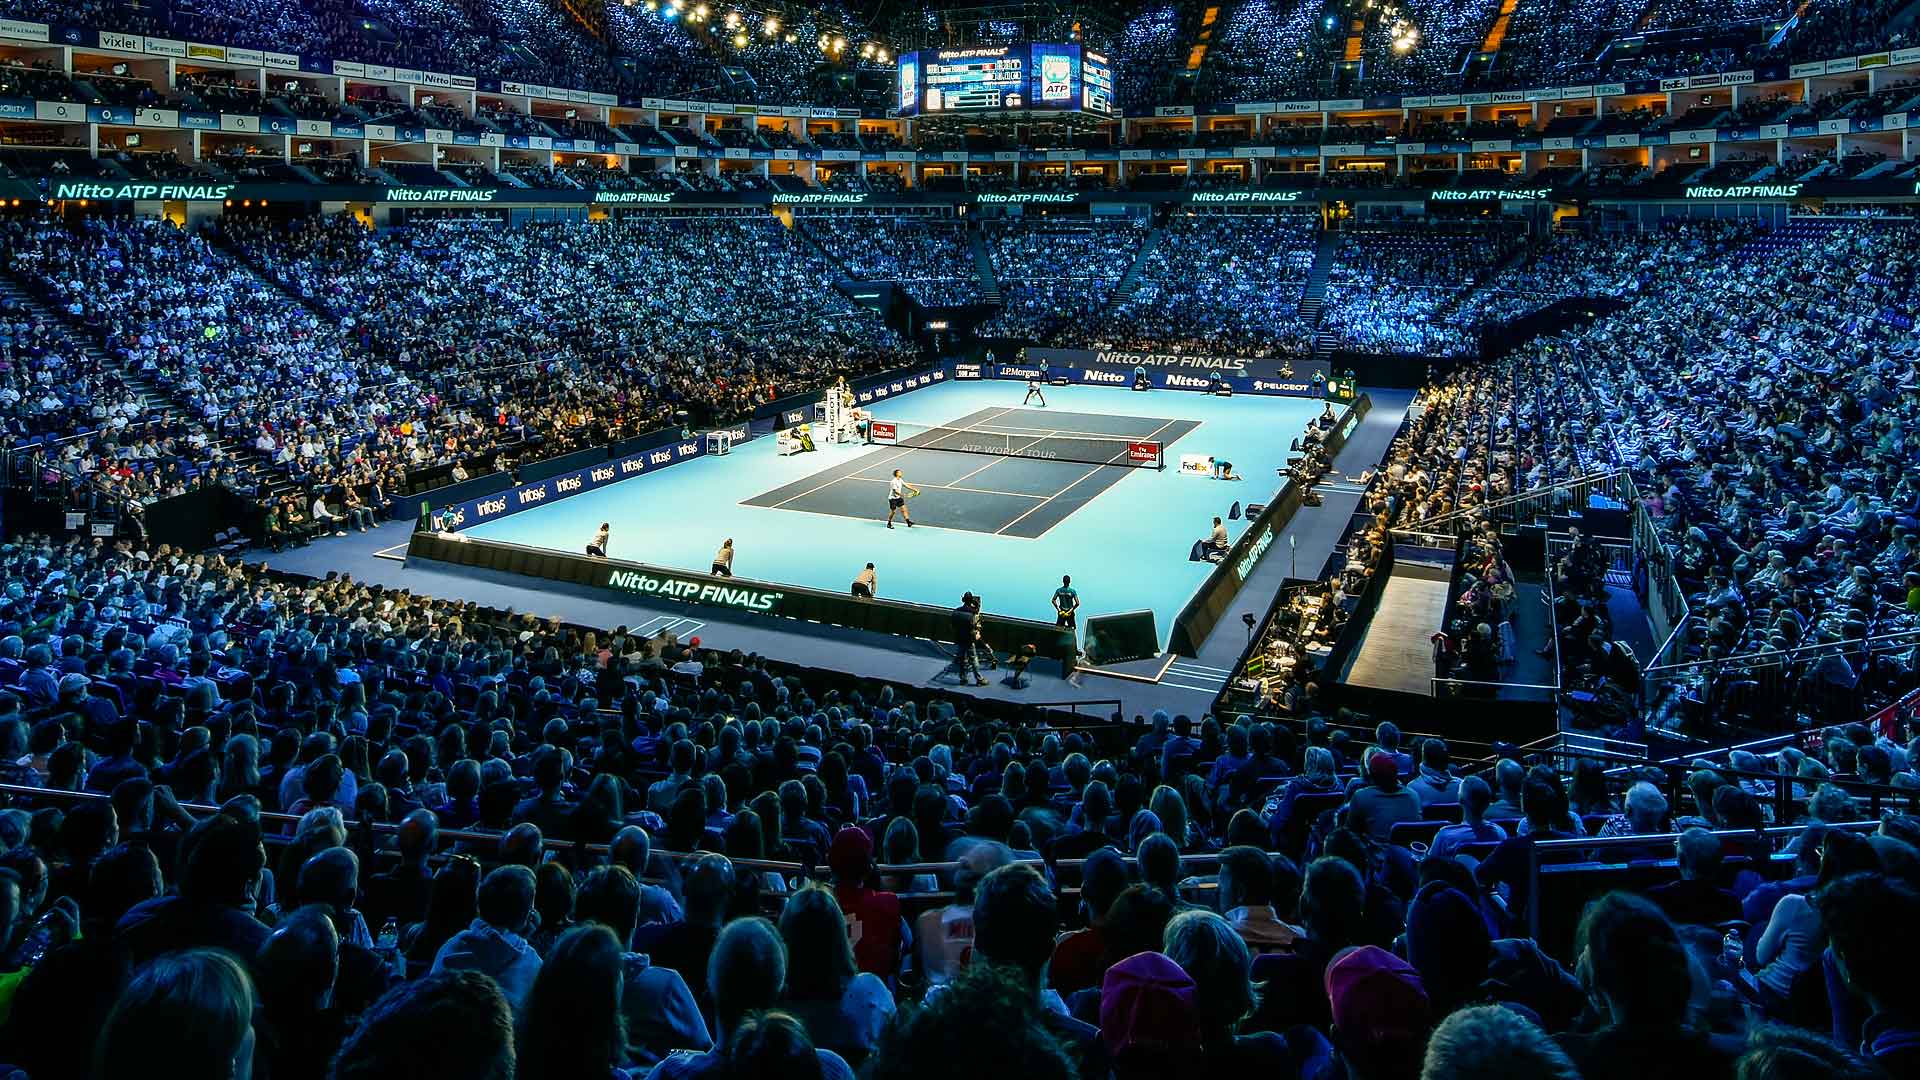 Vista general de The O2 en Londres, sede de las Nitto ATP Finals en noviembre.